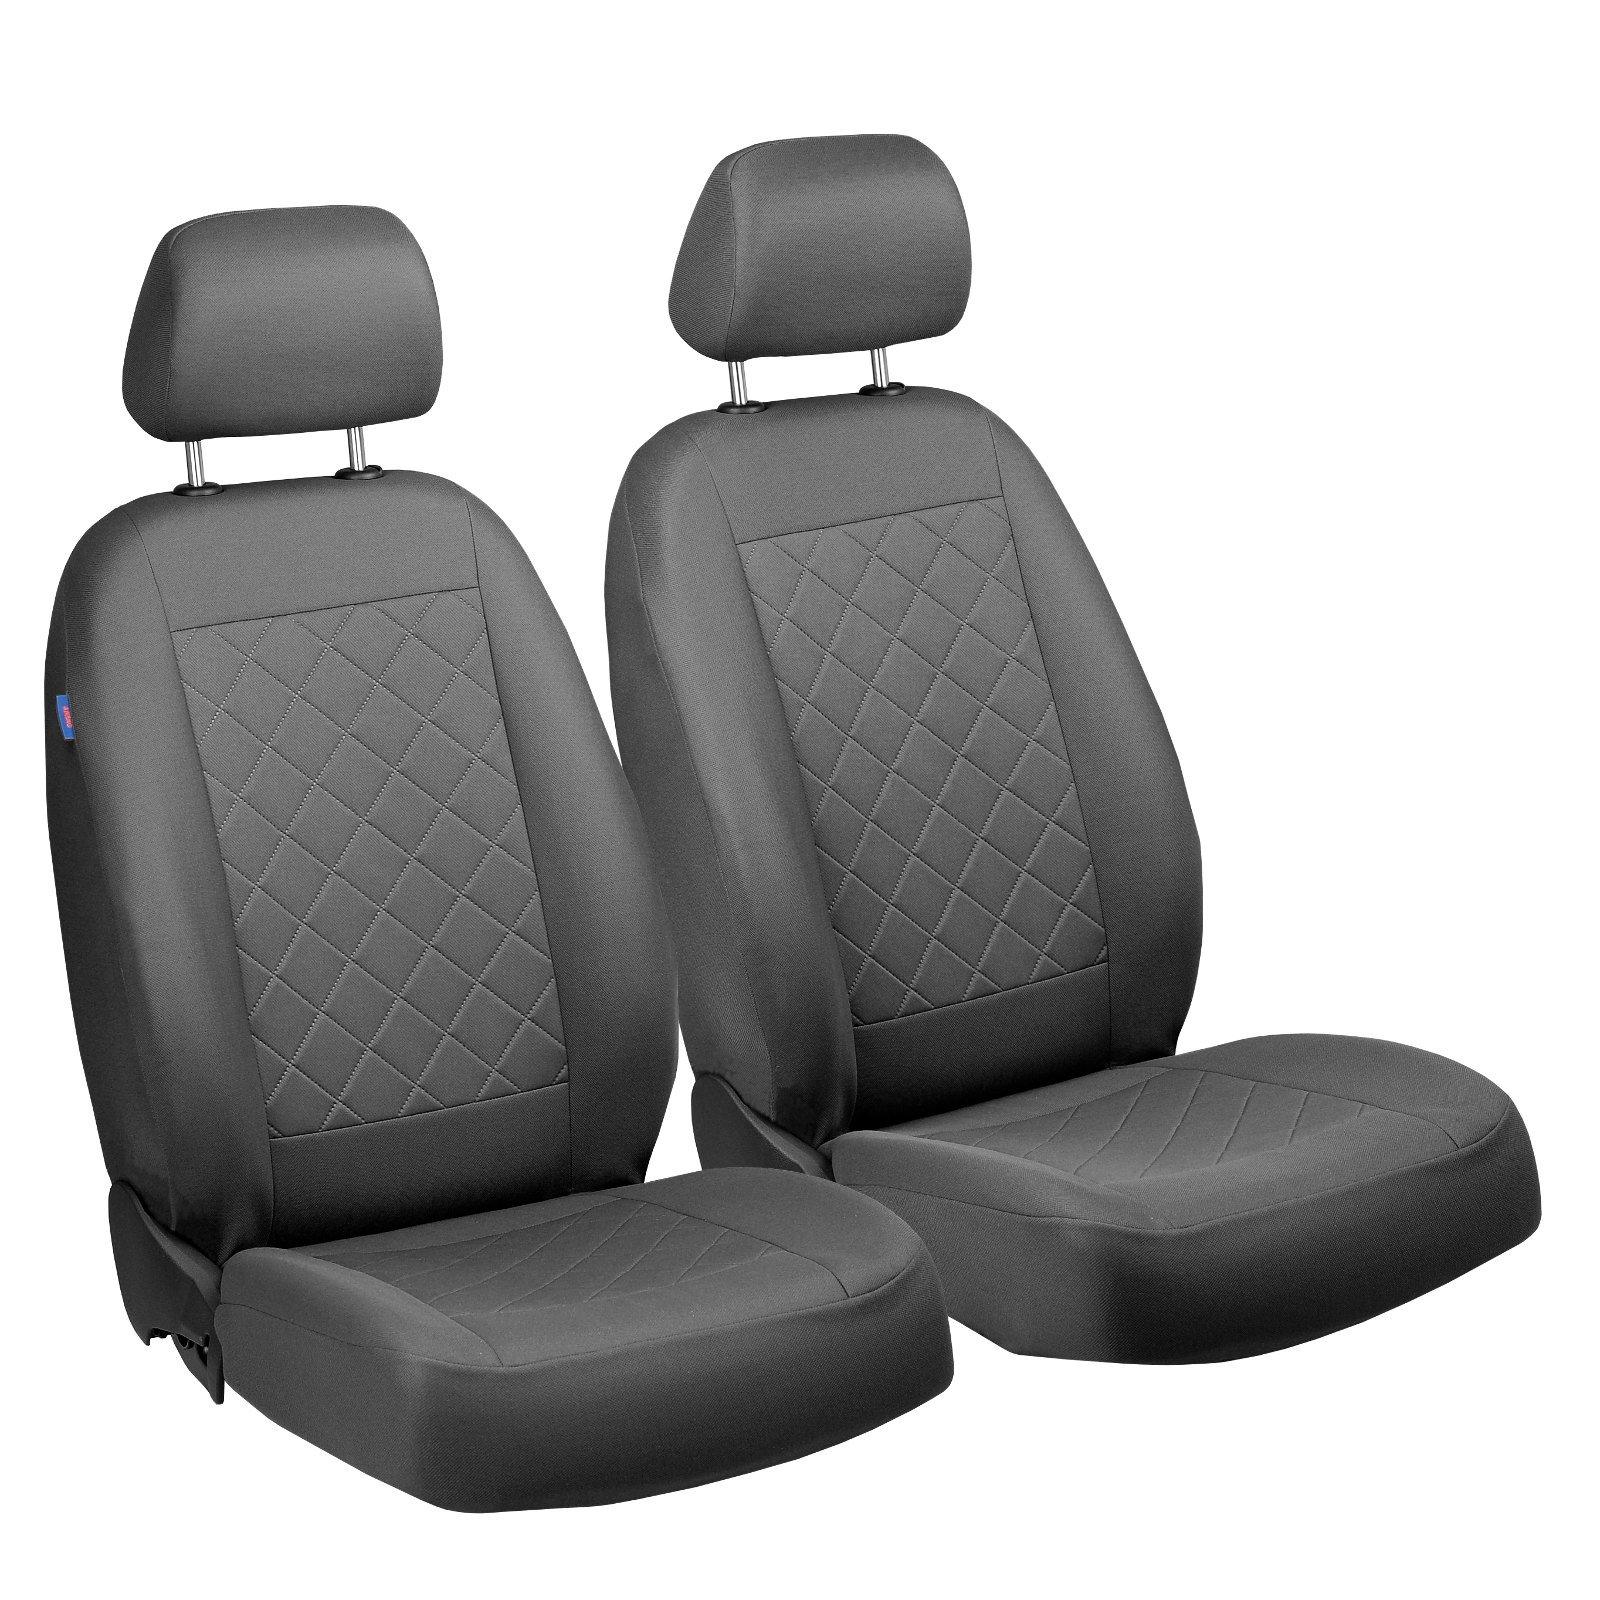 3 Vorne Sitzbezüge - für Fahrer und Beifahrer - Farbe Premium Grau Gepresstes Karomuster